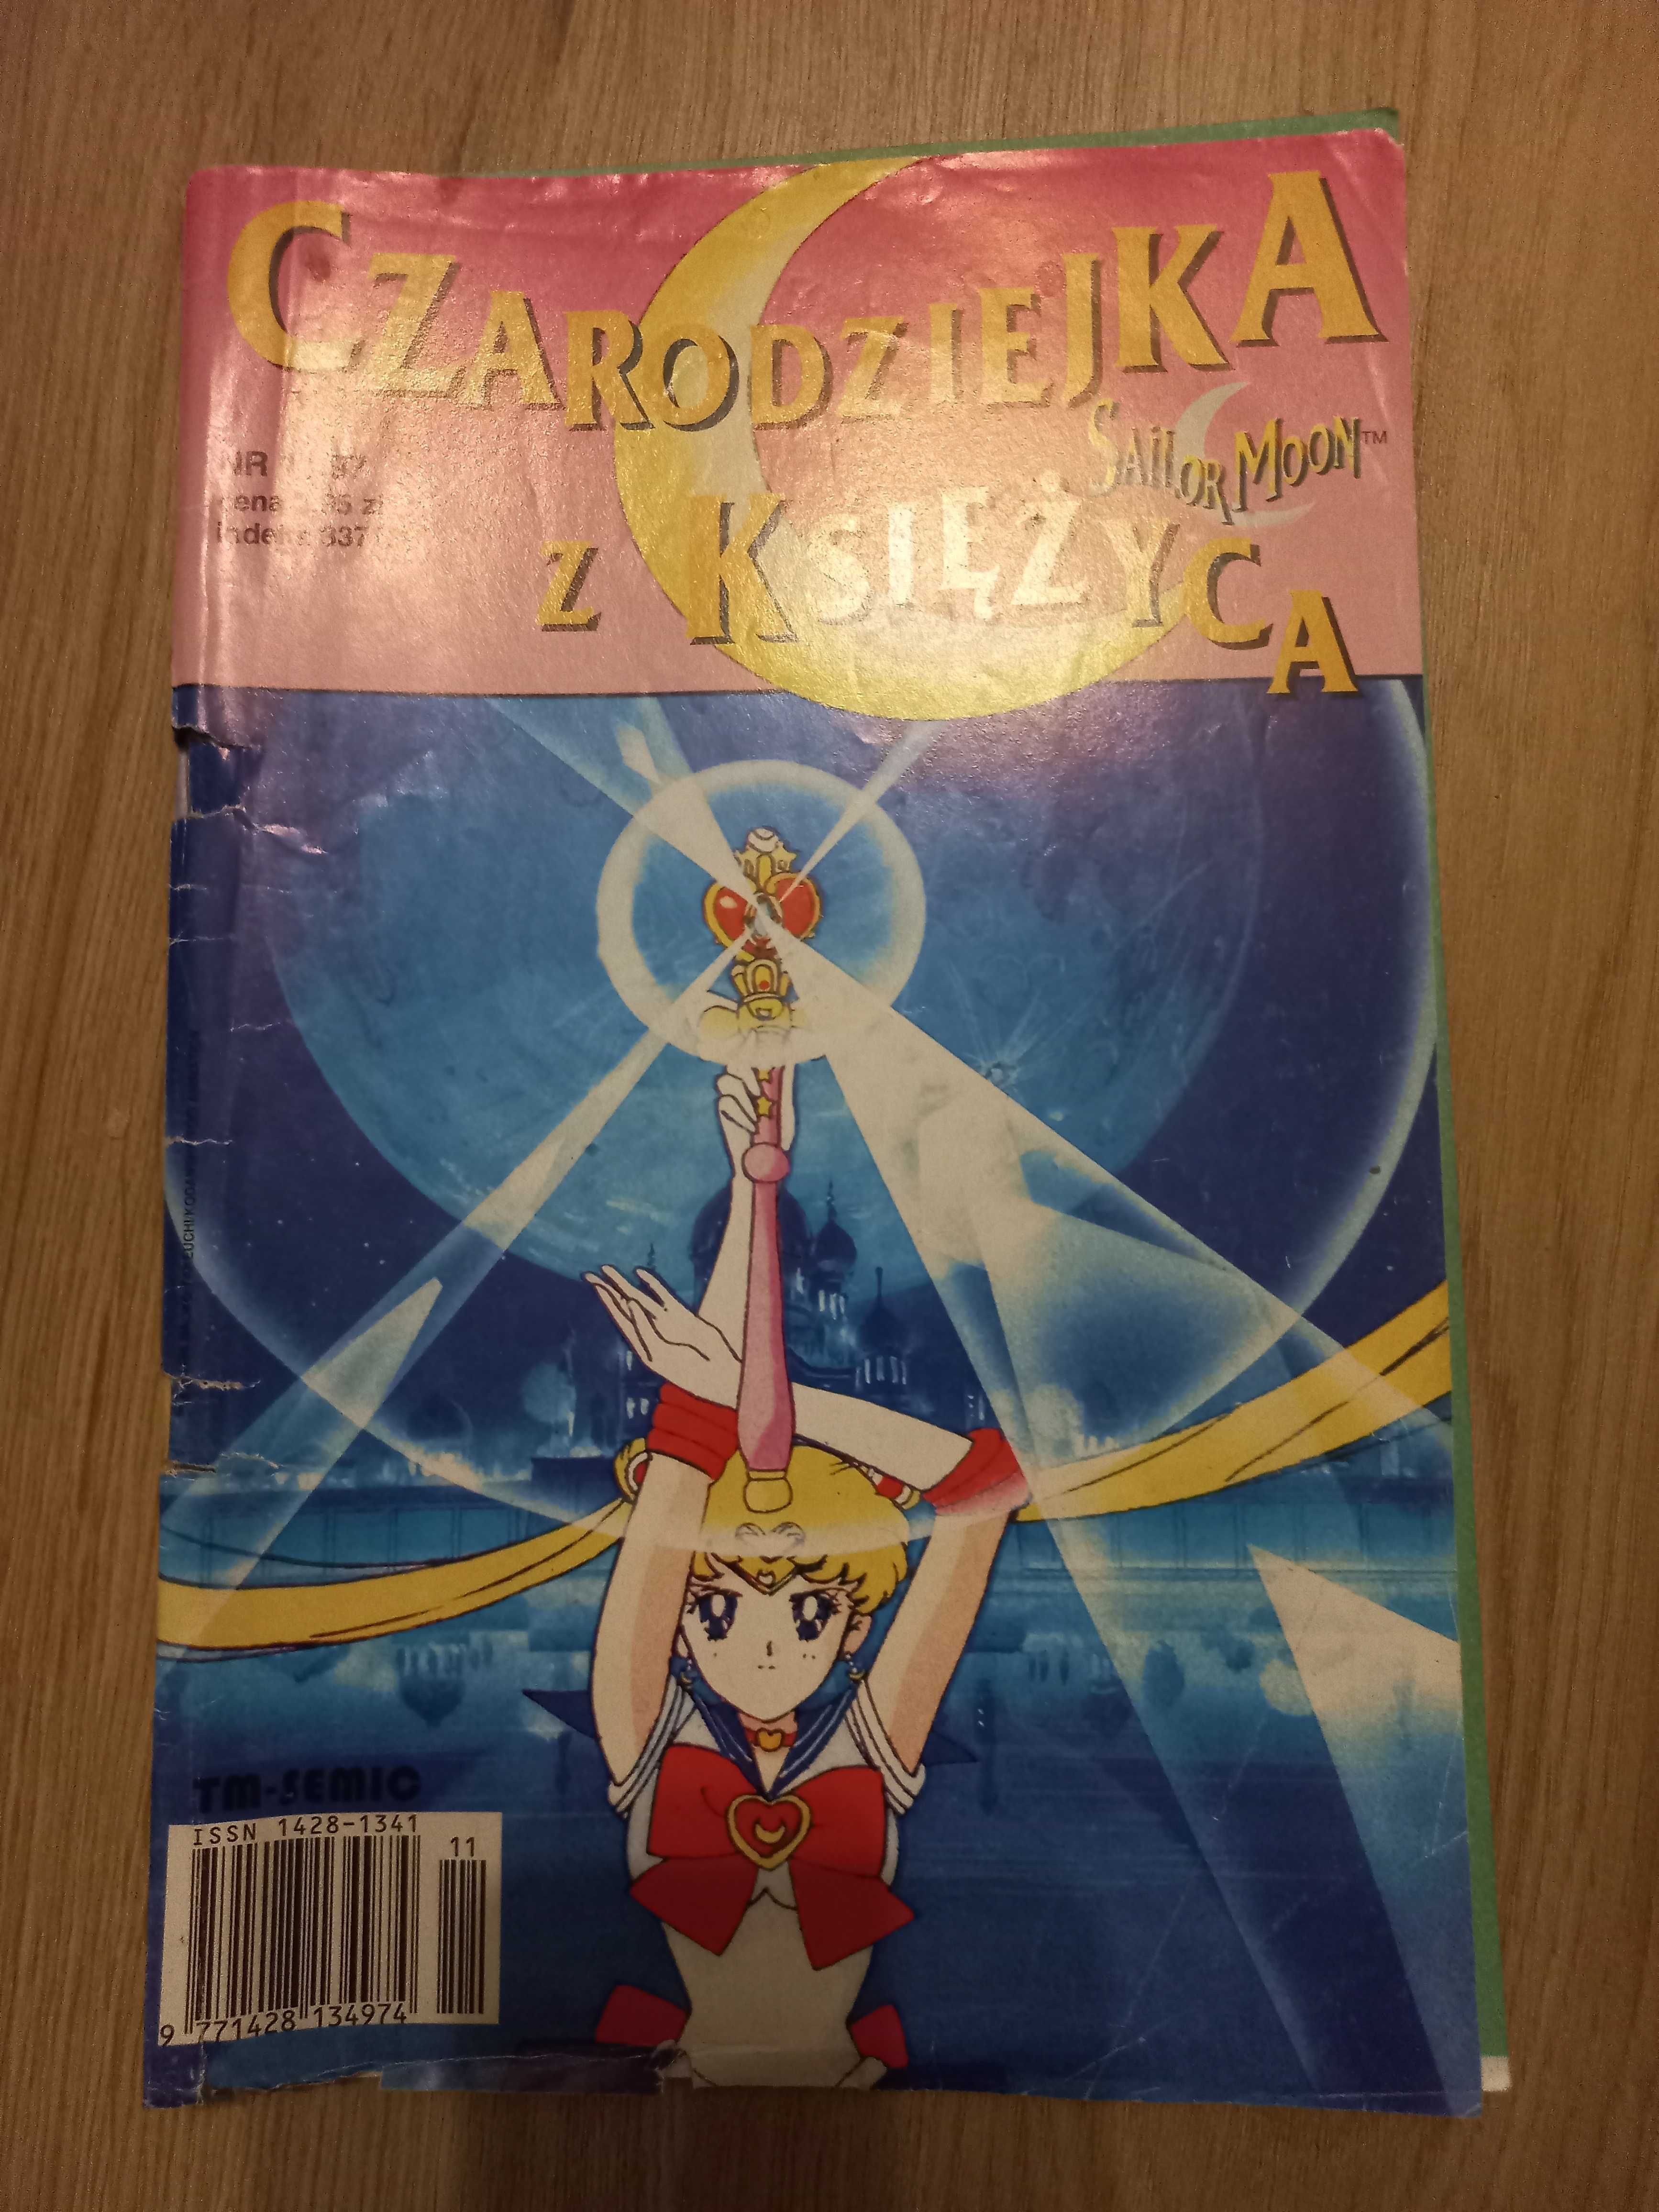 Sailor moon czarodziejka z księżyca  komiks